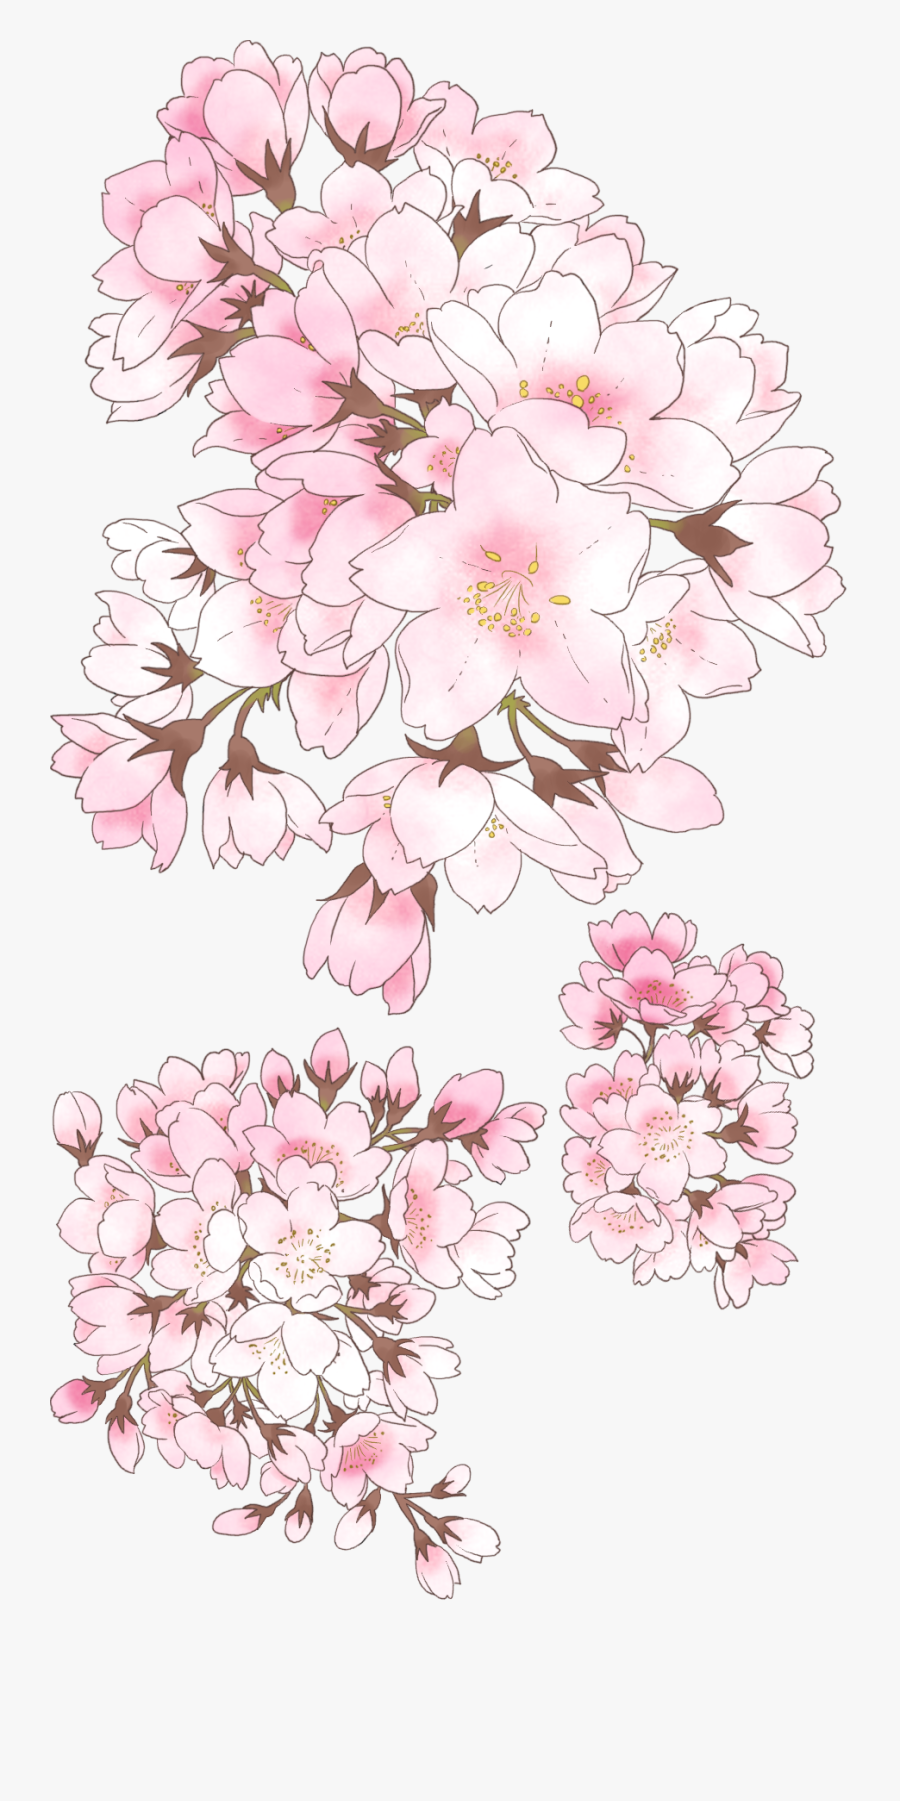 Transparent Cherry Blossom Clipart - Anime Cherry Blossom Drawing, Transparent Clipart